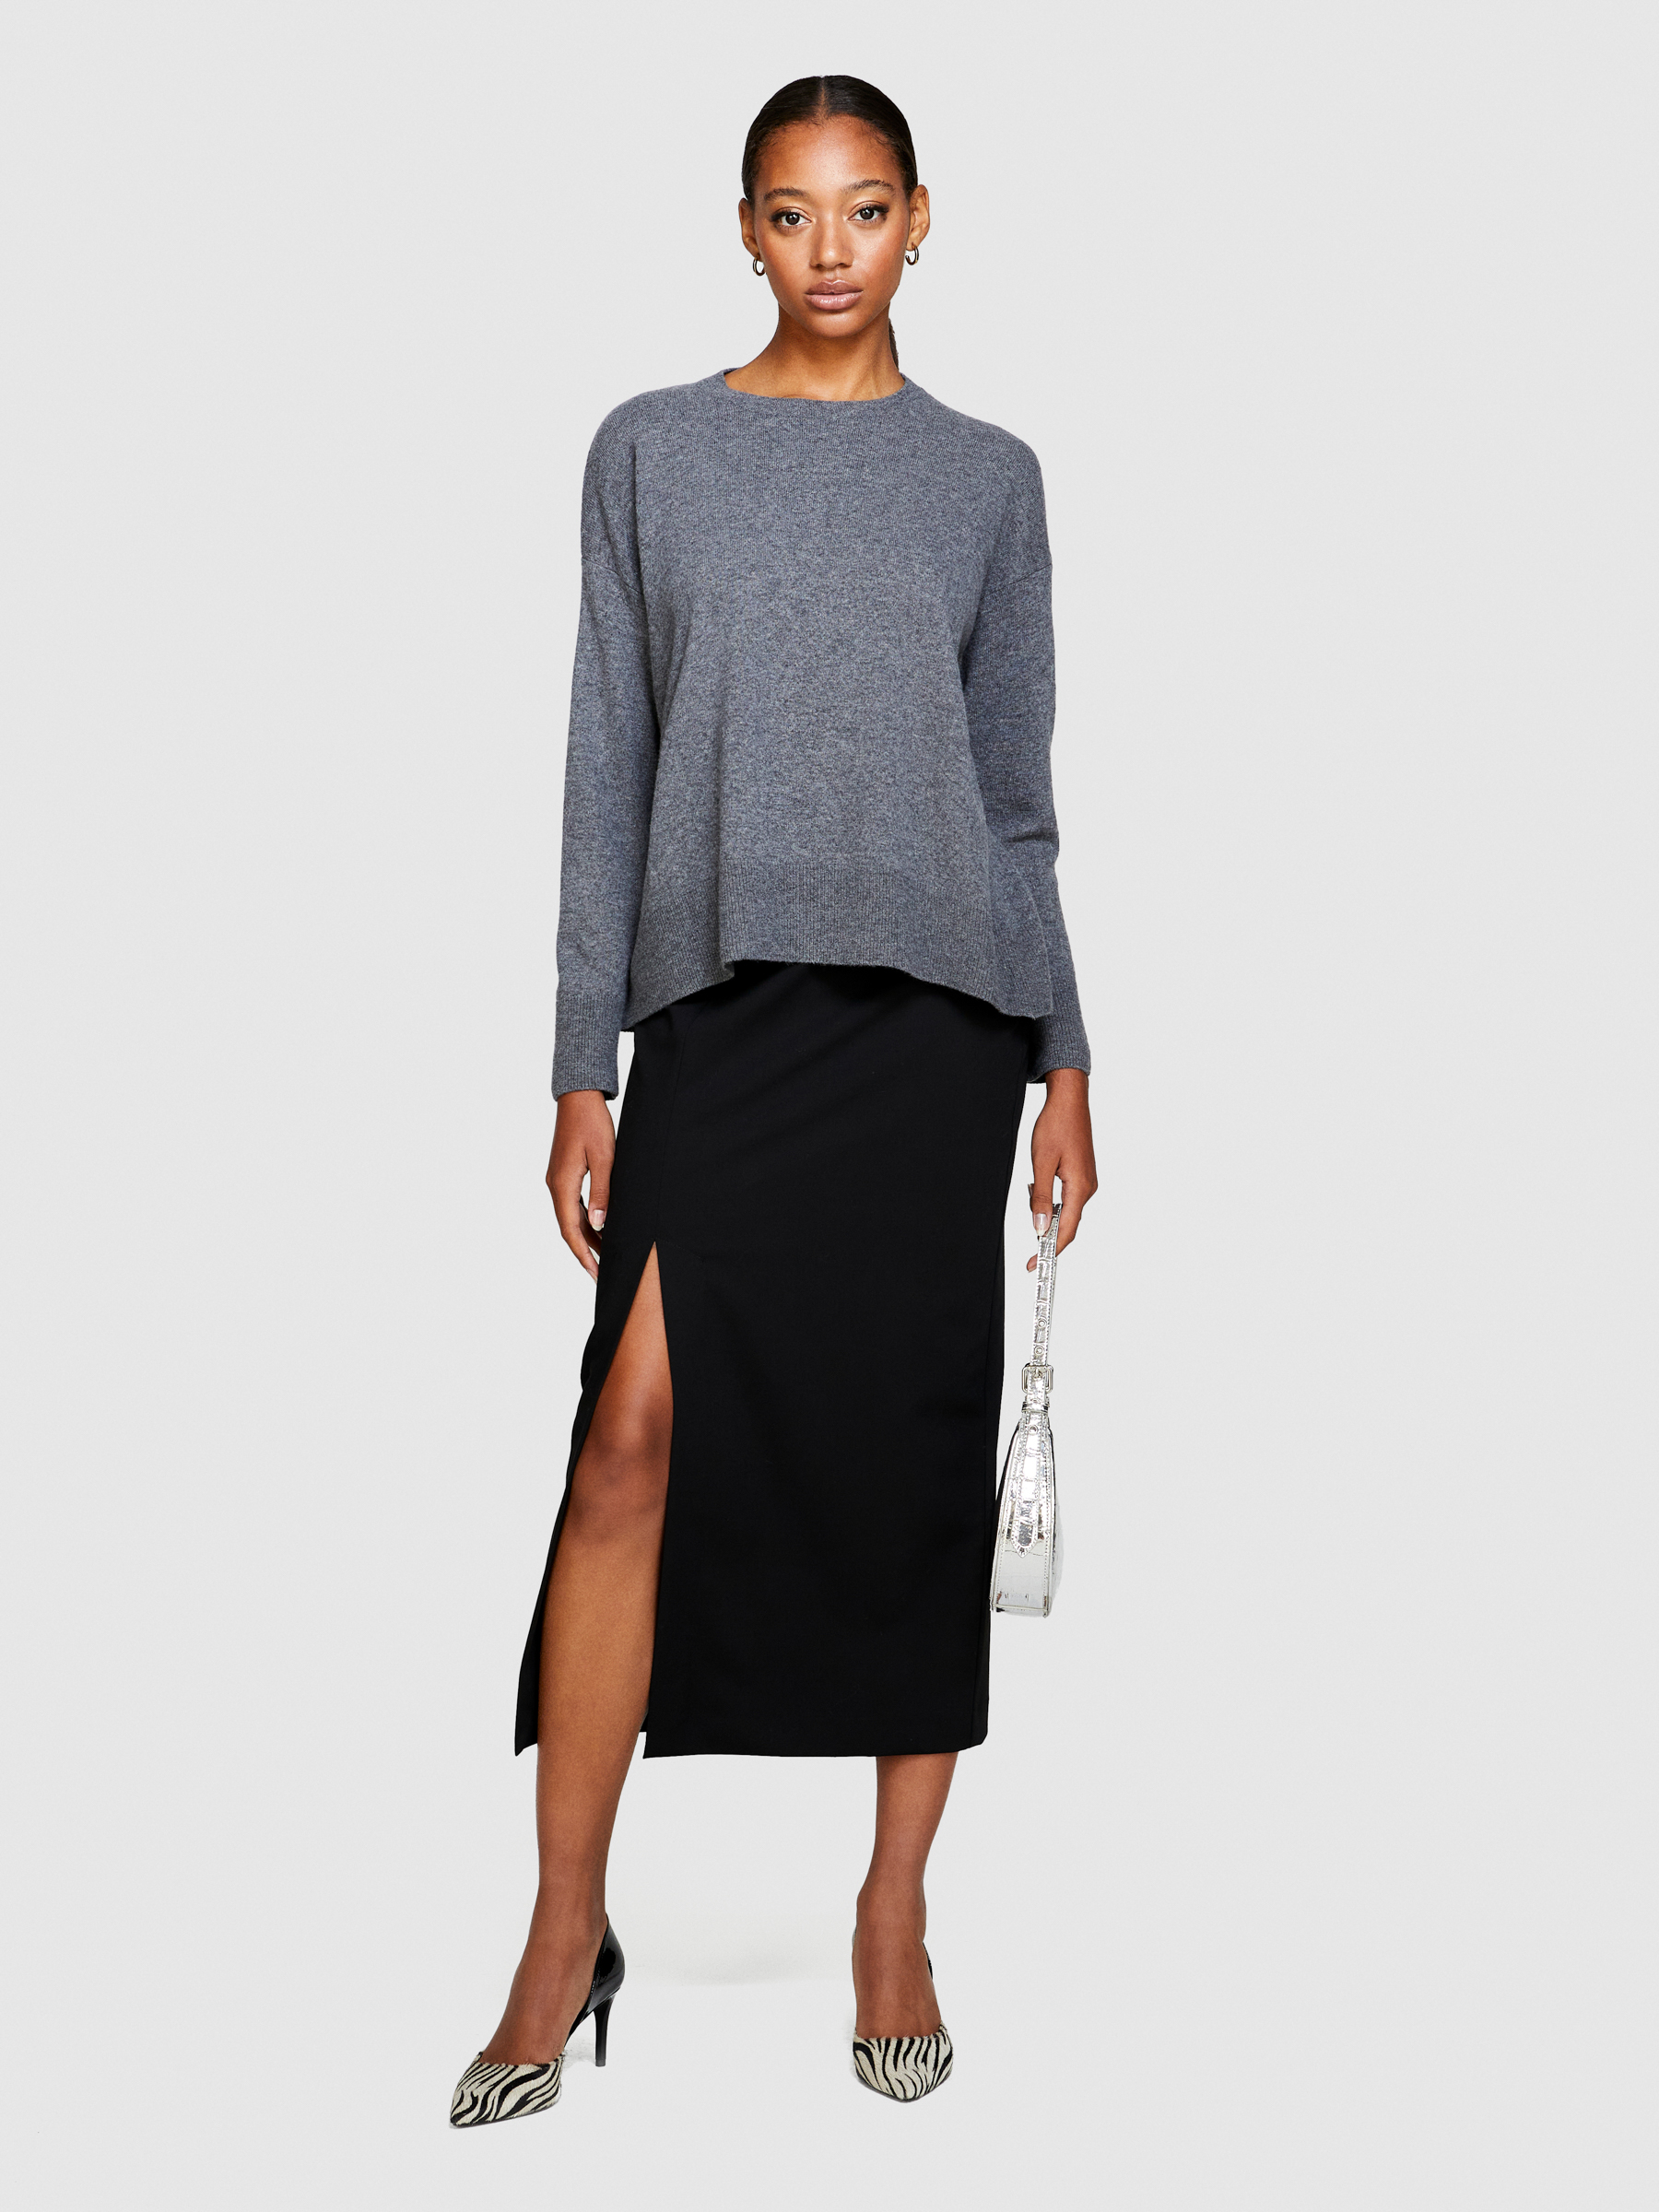 Sisley - Boxy Fit Sweater, Woman, Gray, Size: XS